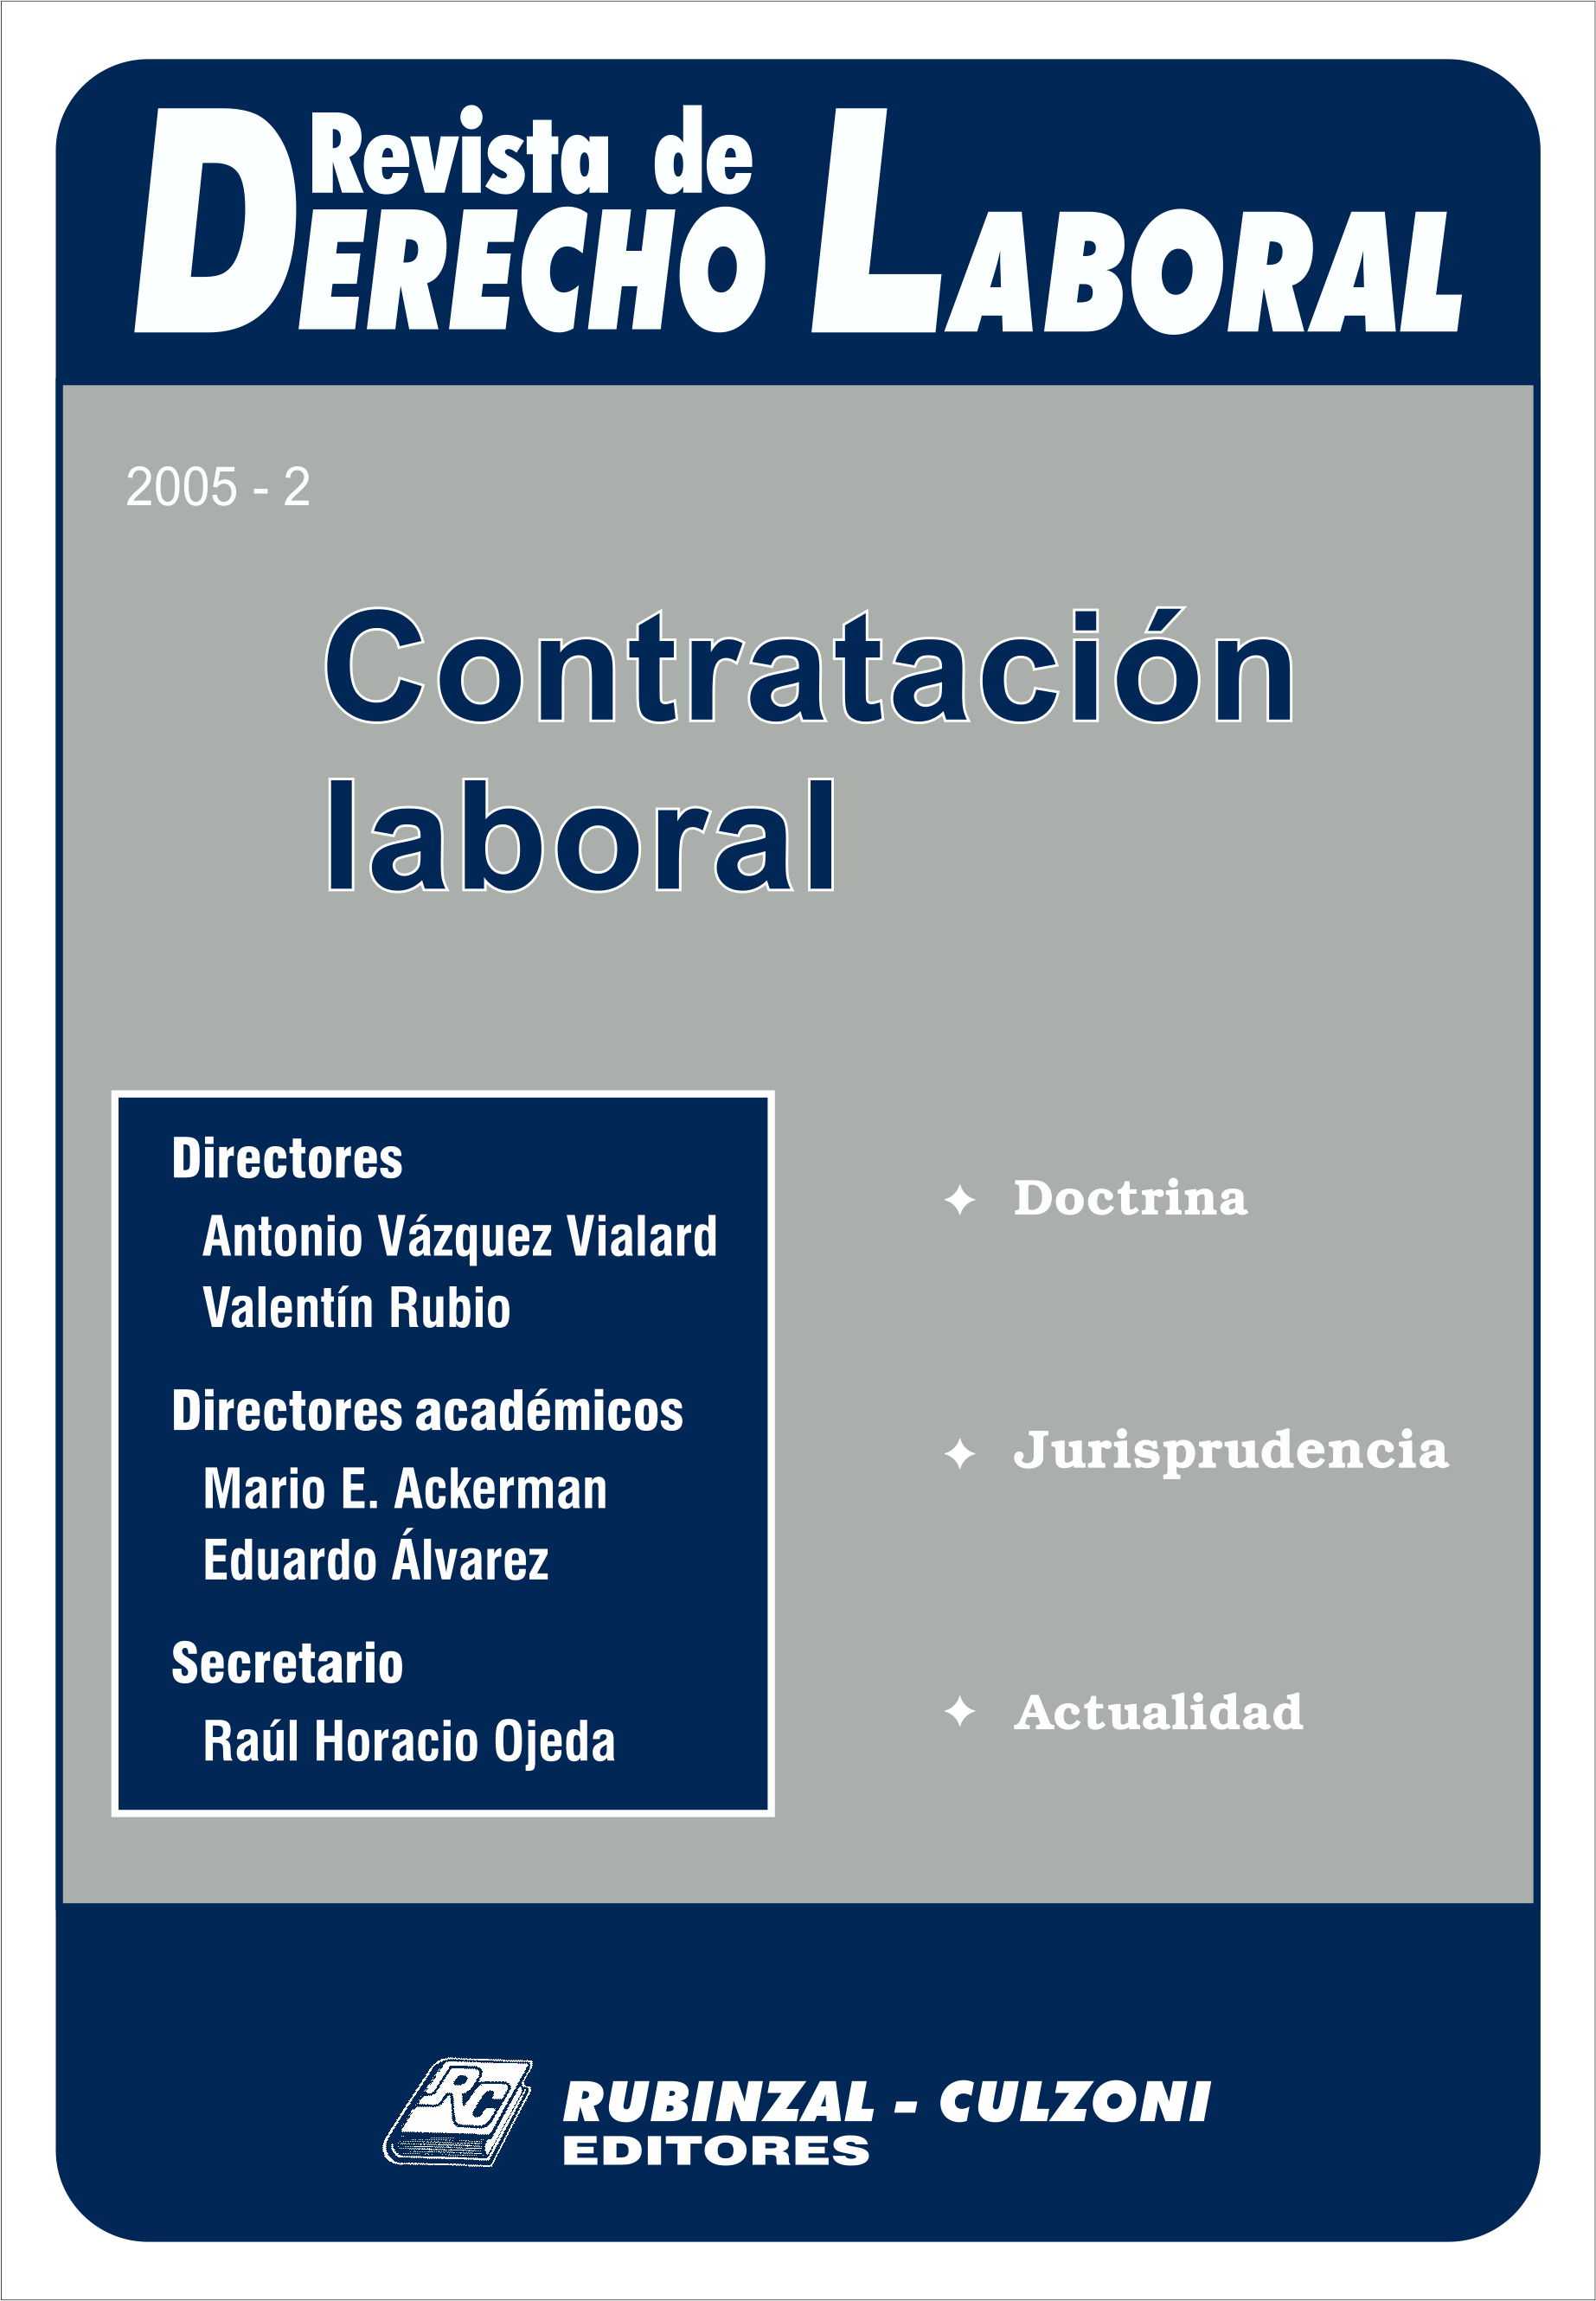 Revista de Derecho Laboral - Contratación laboral